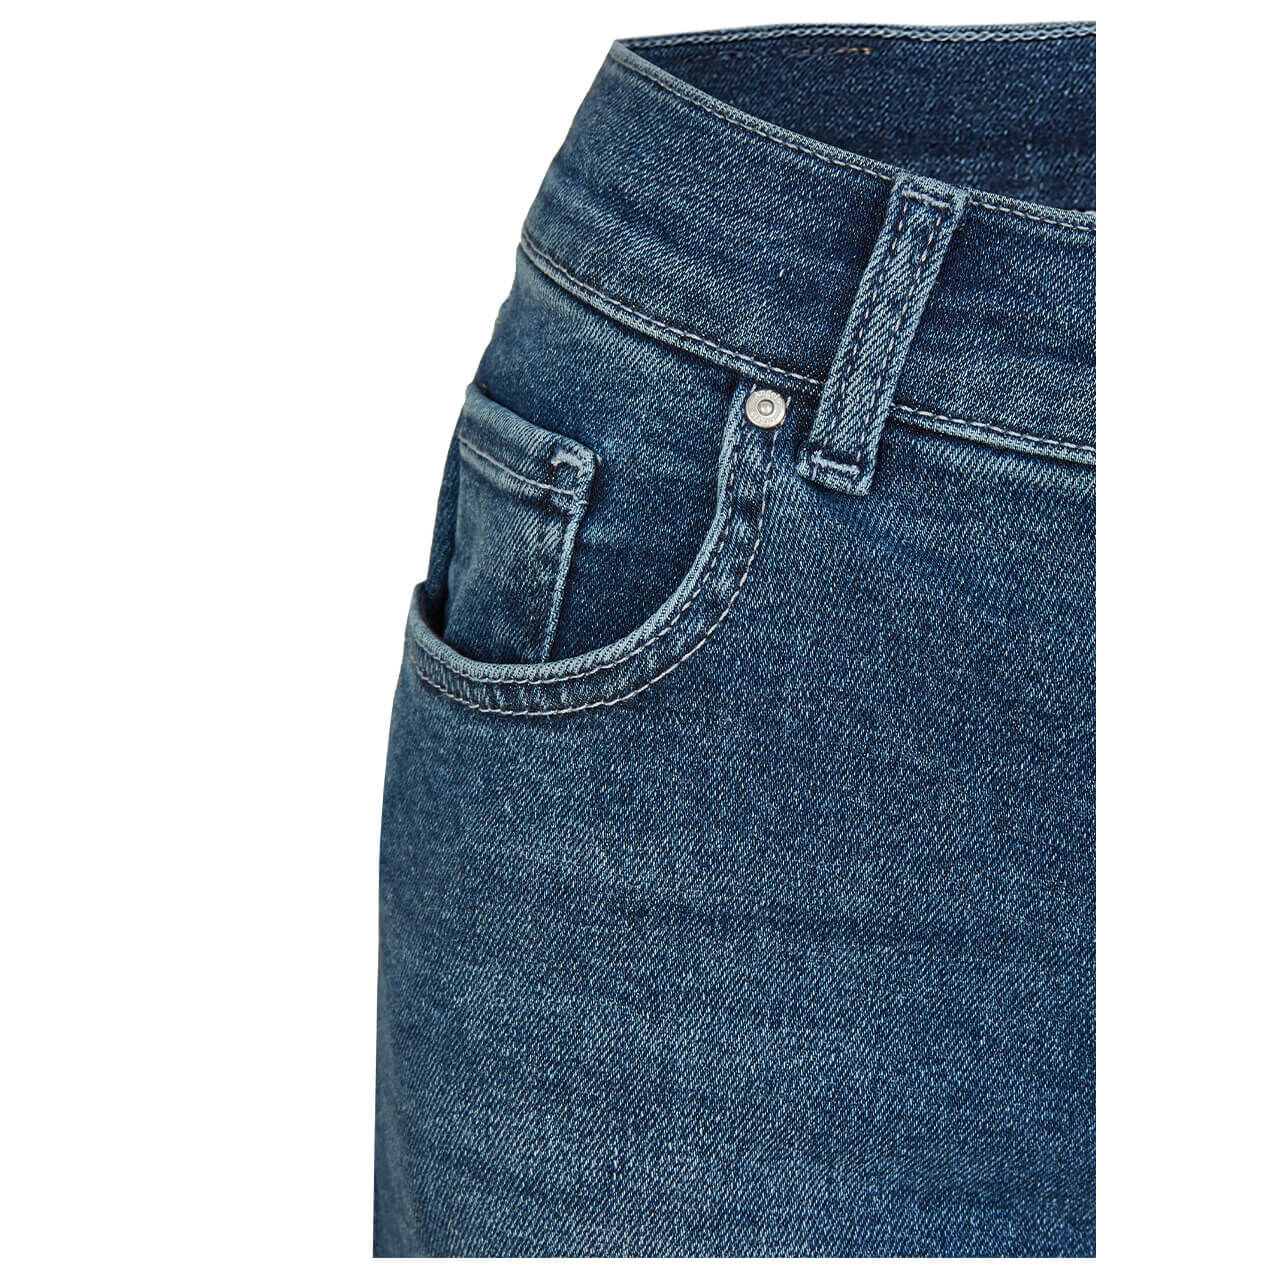 Angels Jeans Skinny für Damen in Mittelblau angewaschen, FarbNr.: 3358